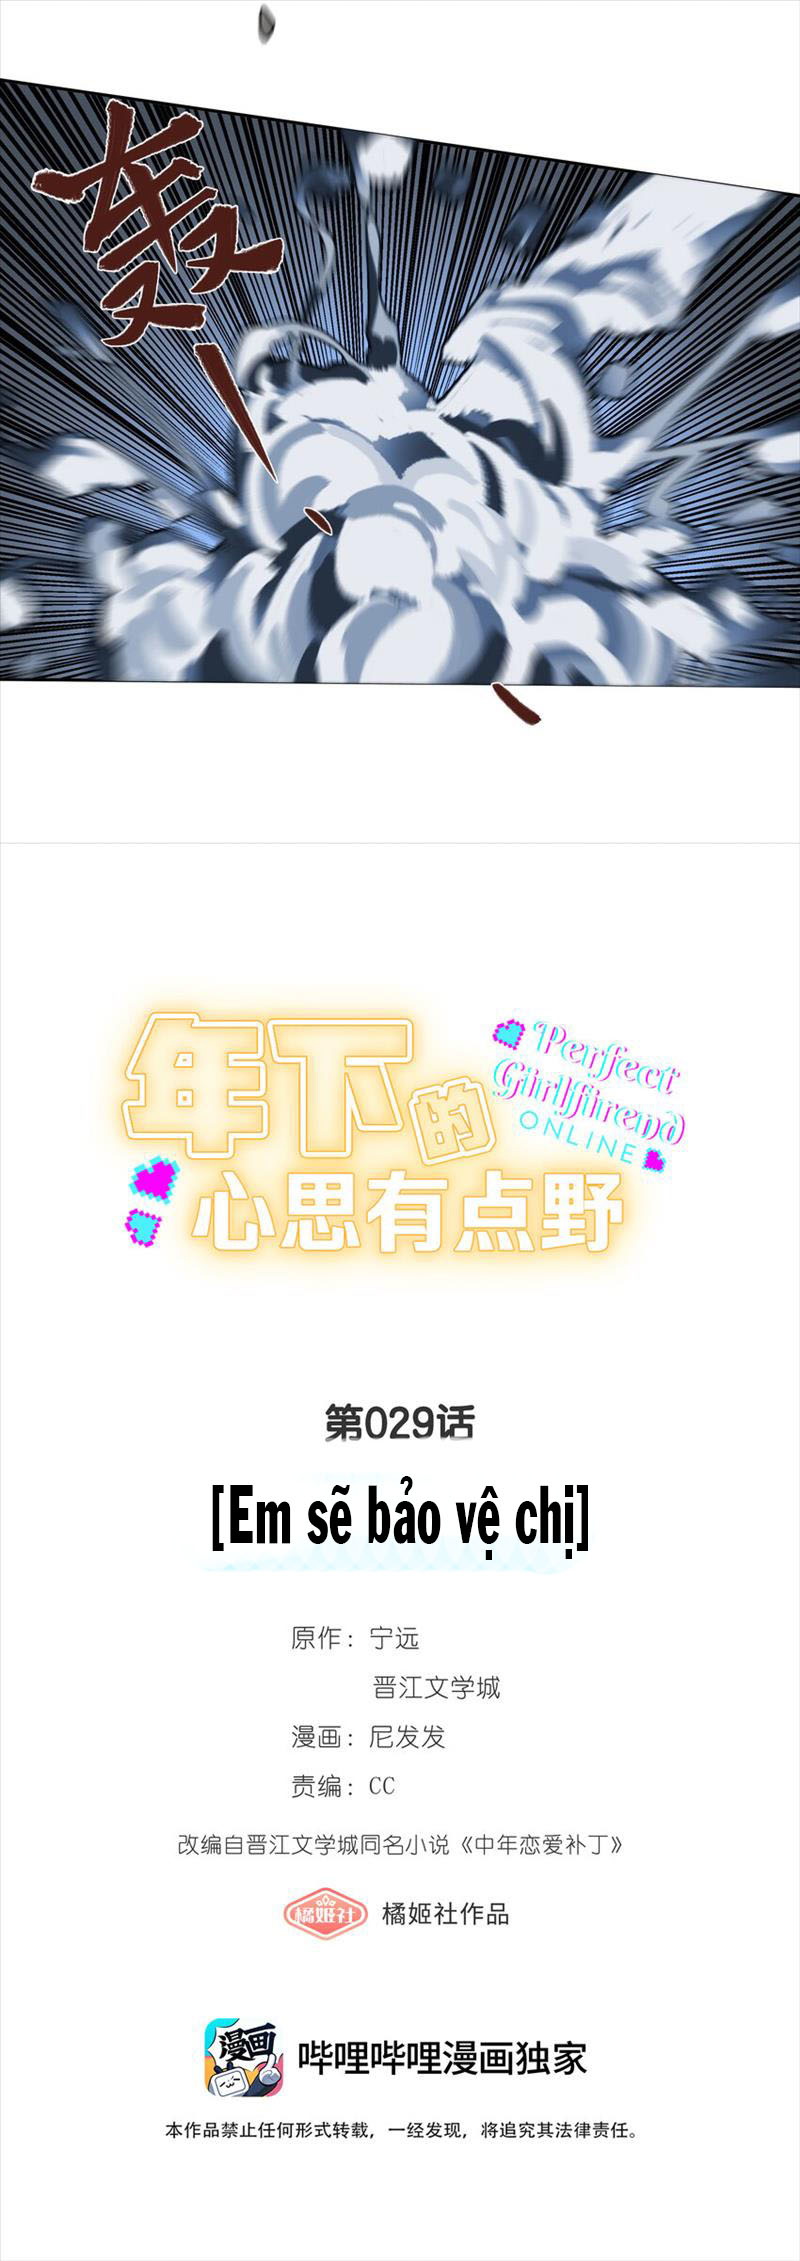 ban-gai-hoan-hao-online-chap-29-1